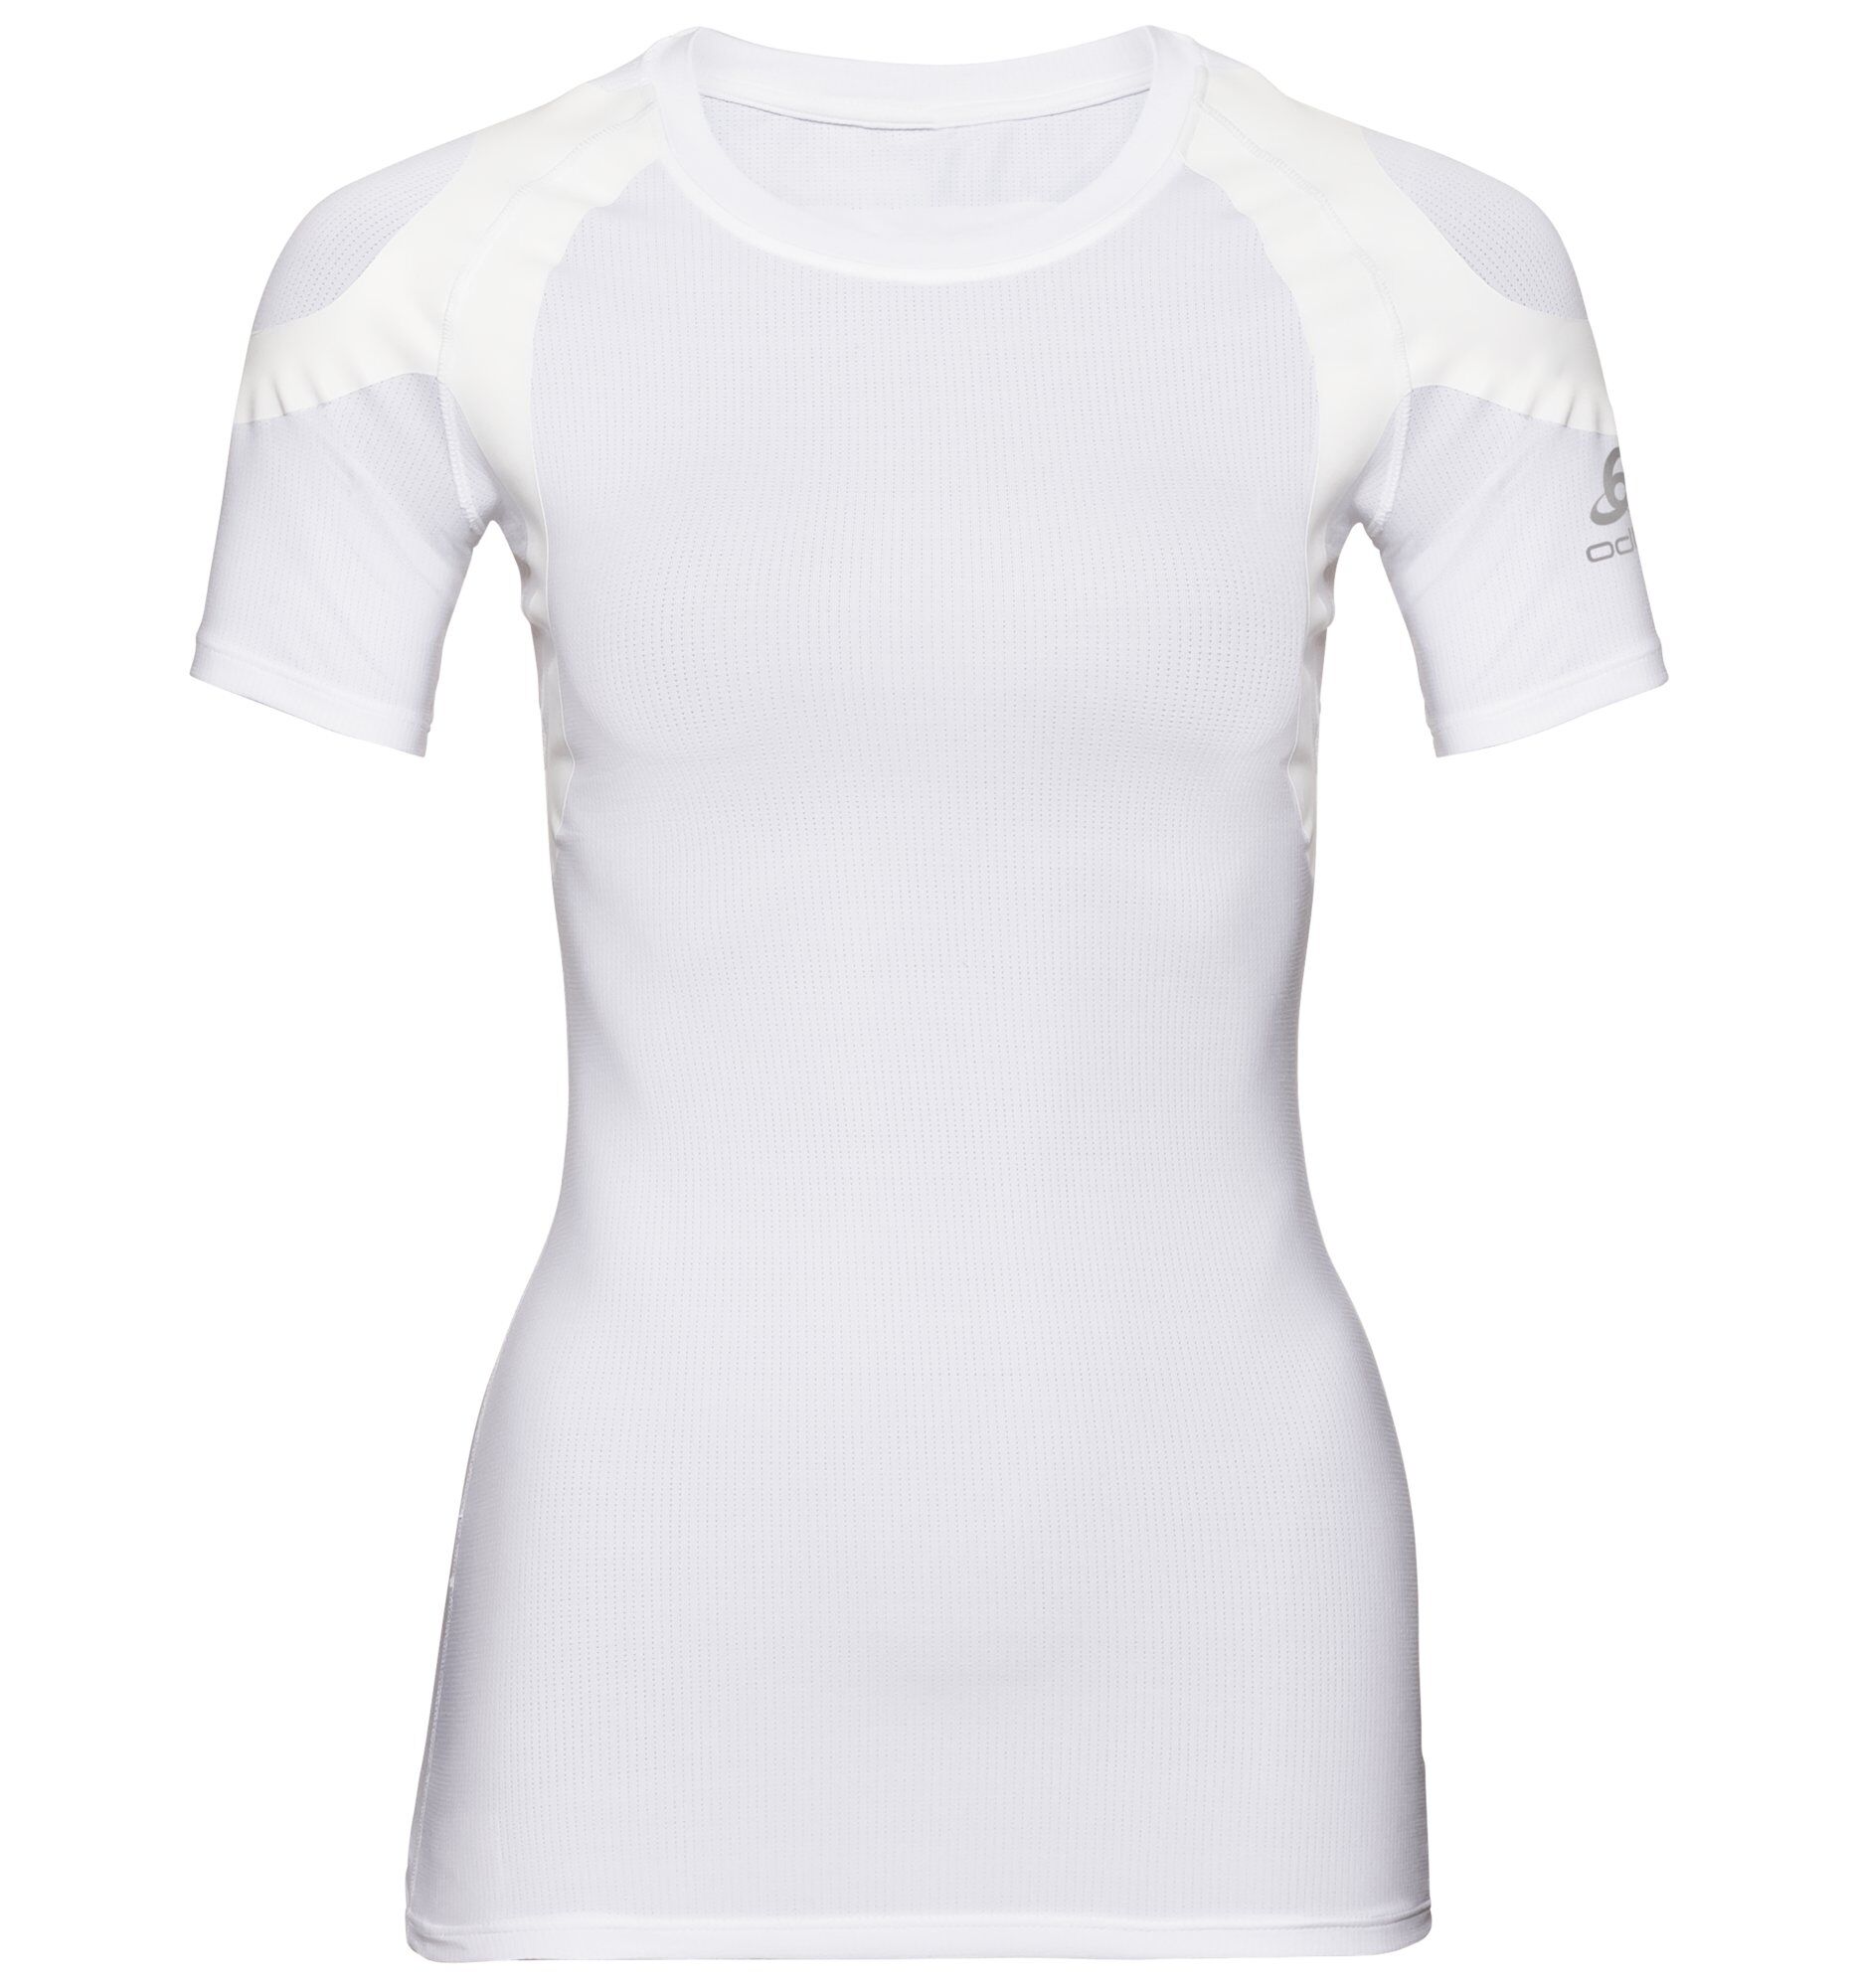 Odlo Active Spine Light - T-shirt - Women's